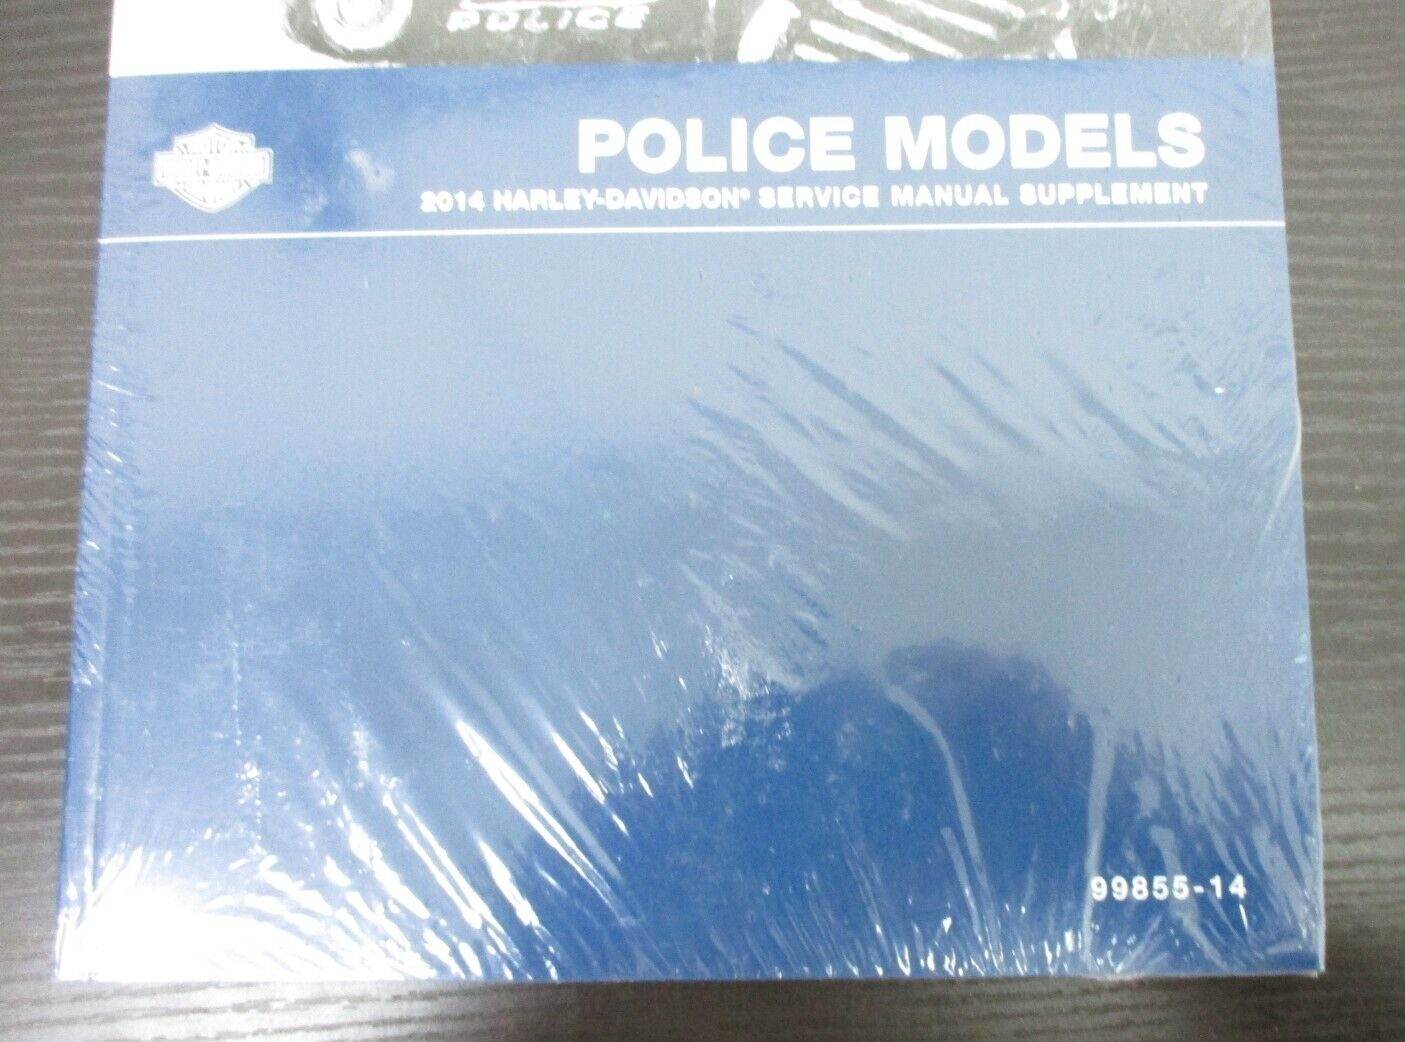 Harley-Davidson Police Models 2014 Service Manual Supplement 99855-14